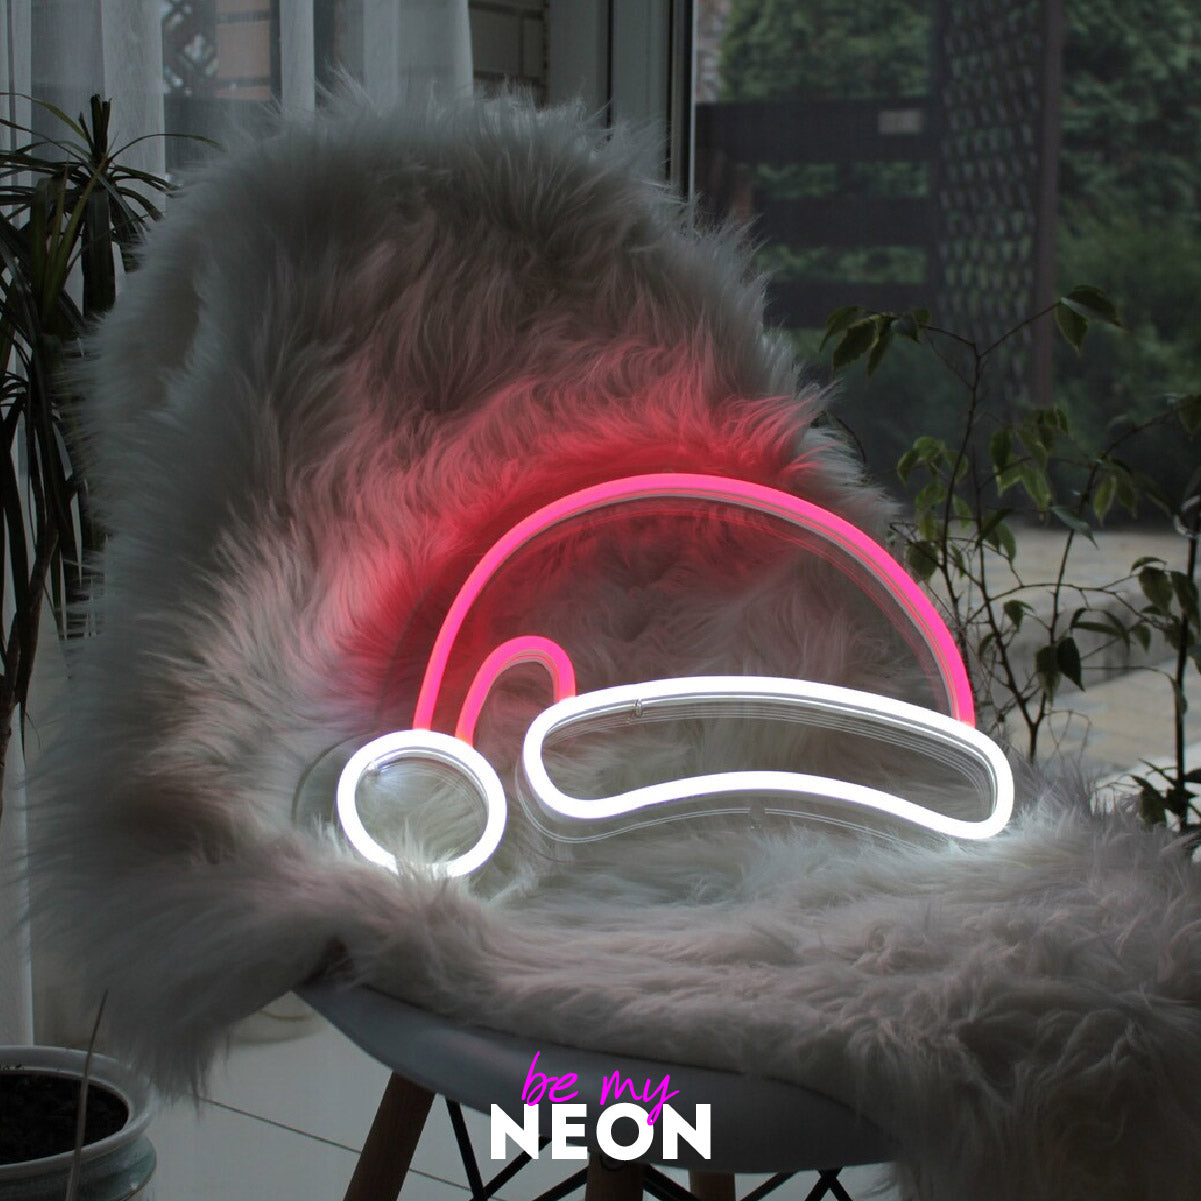 "Weihnachts - Hut Deko" Leuchtmotiv aus LED Neon